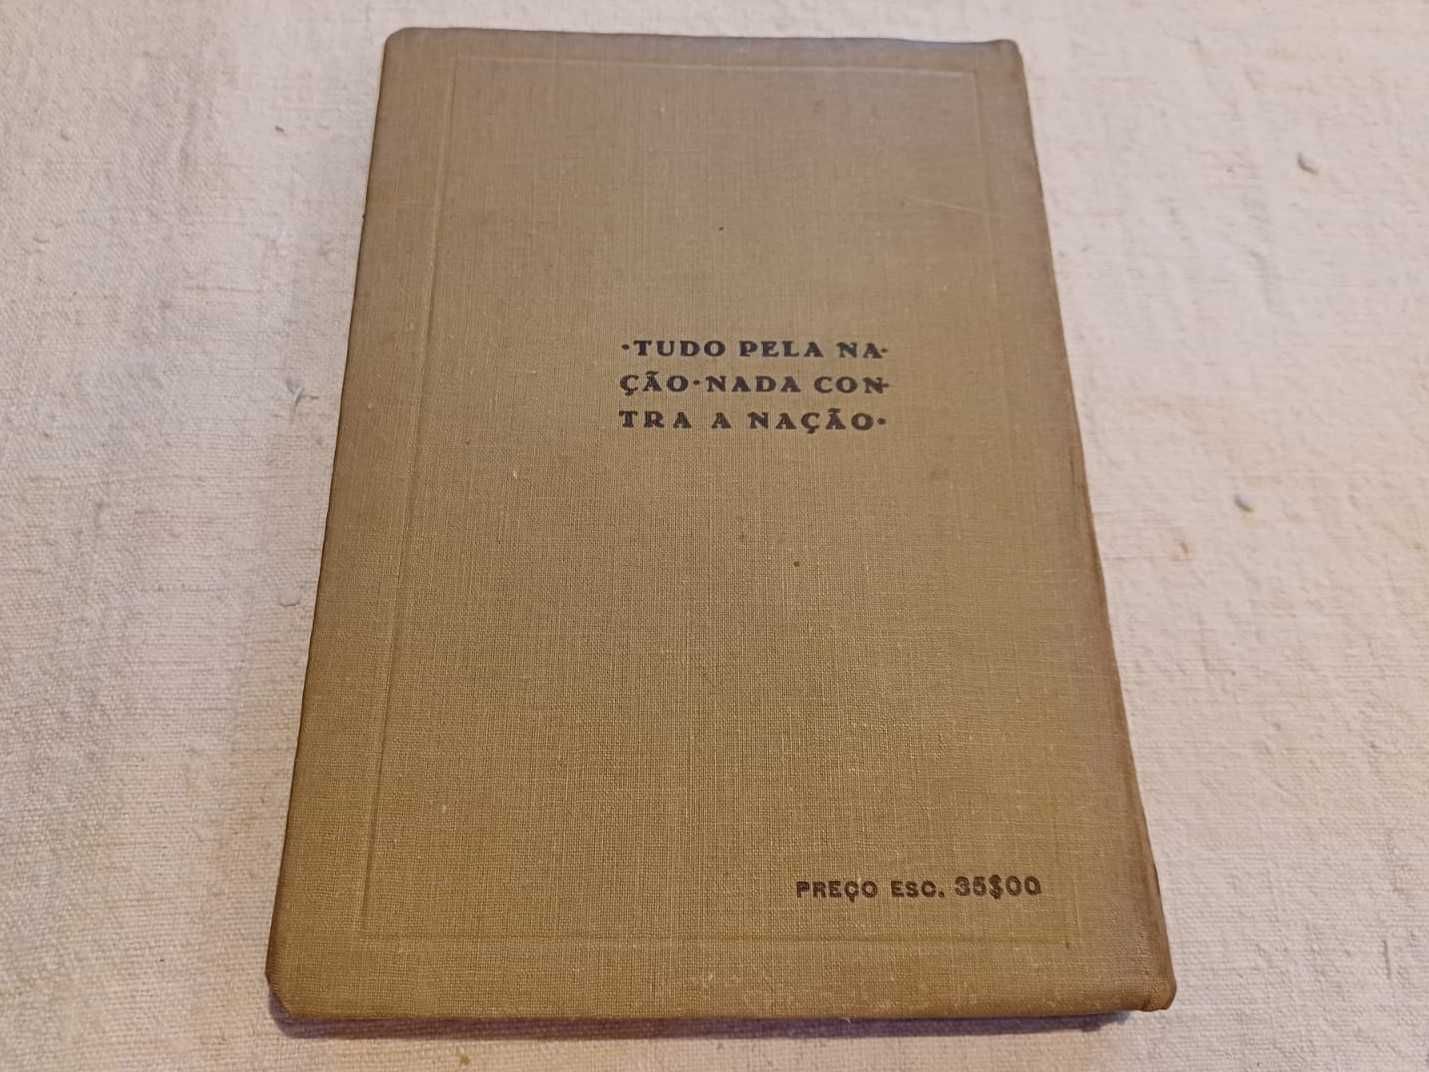 Livro Álgebra e Trigonometria para o 2º ciclo, P. Campos Tavares, 1946